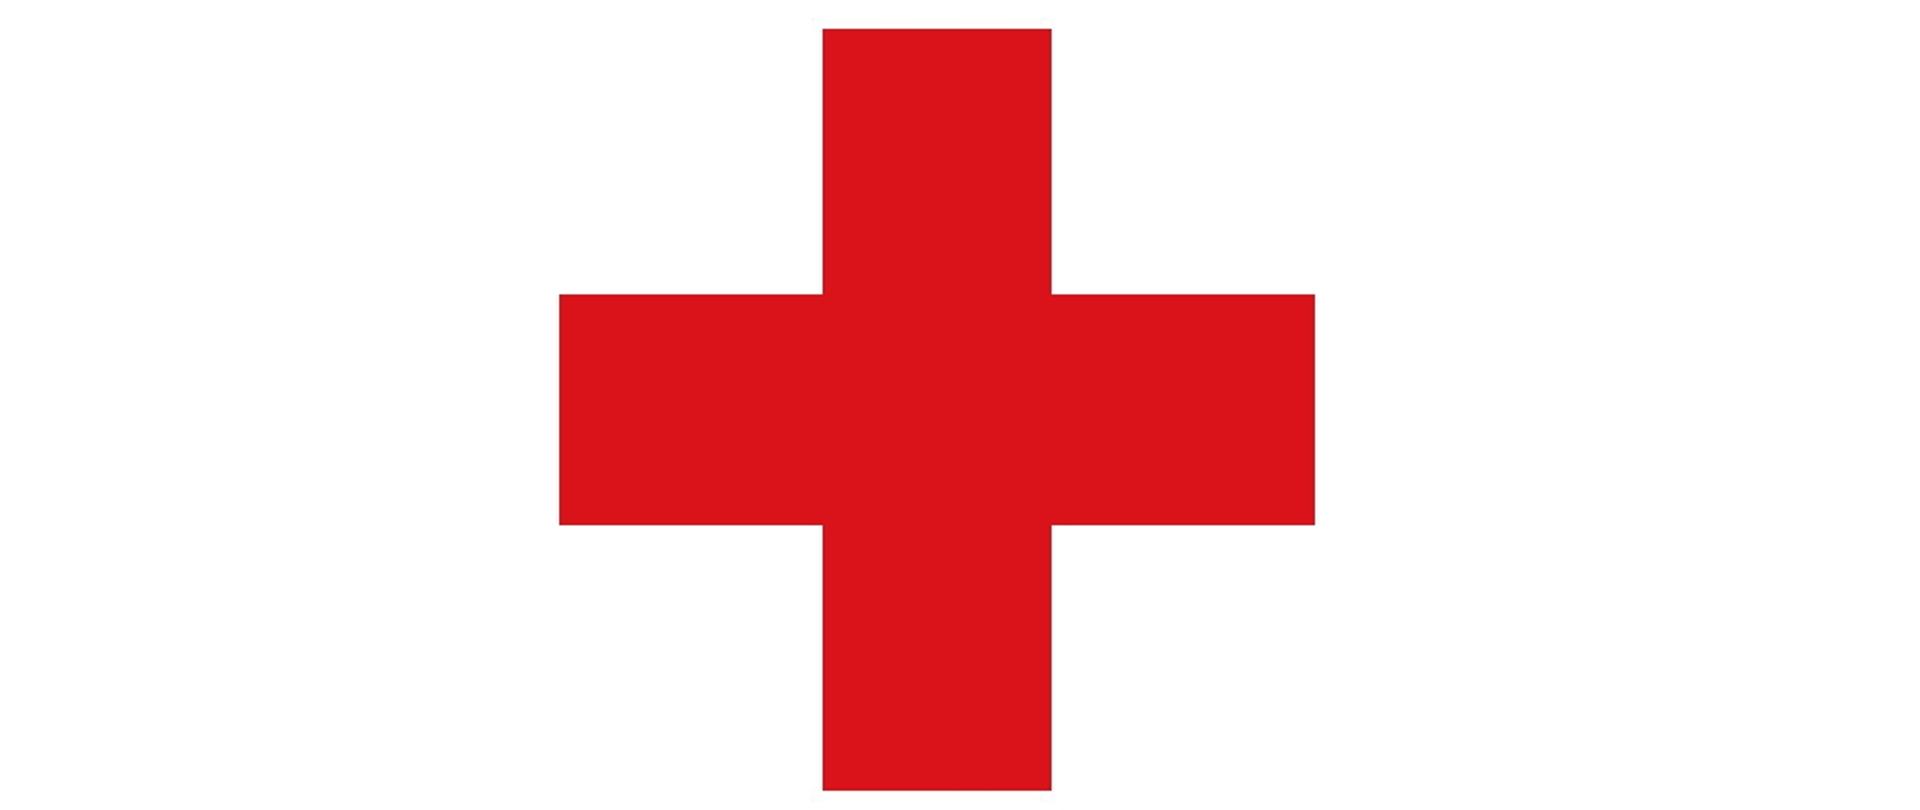 Zdjęcie przedstawia znak czerwonego krzyża na białym tle.